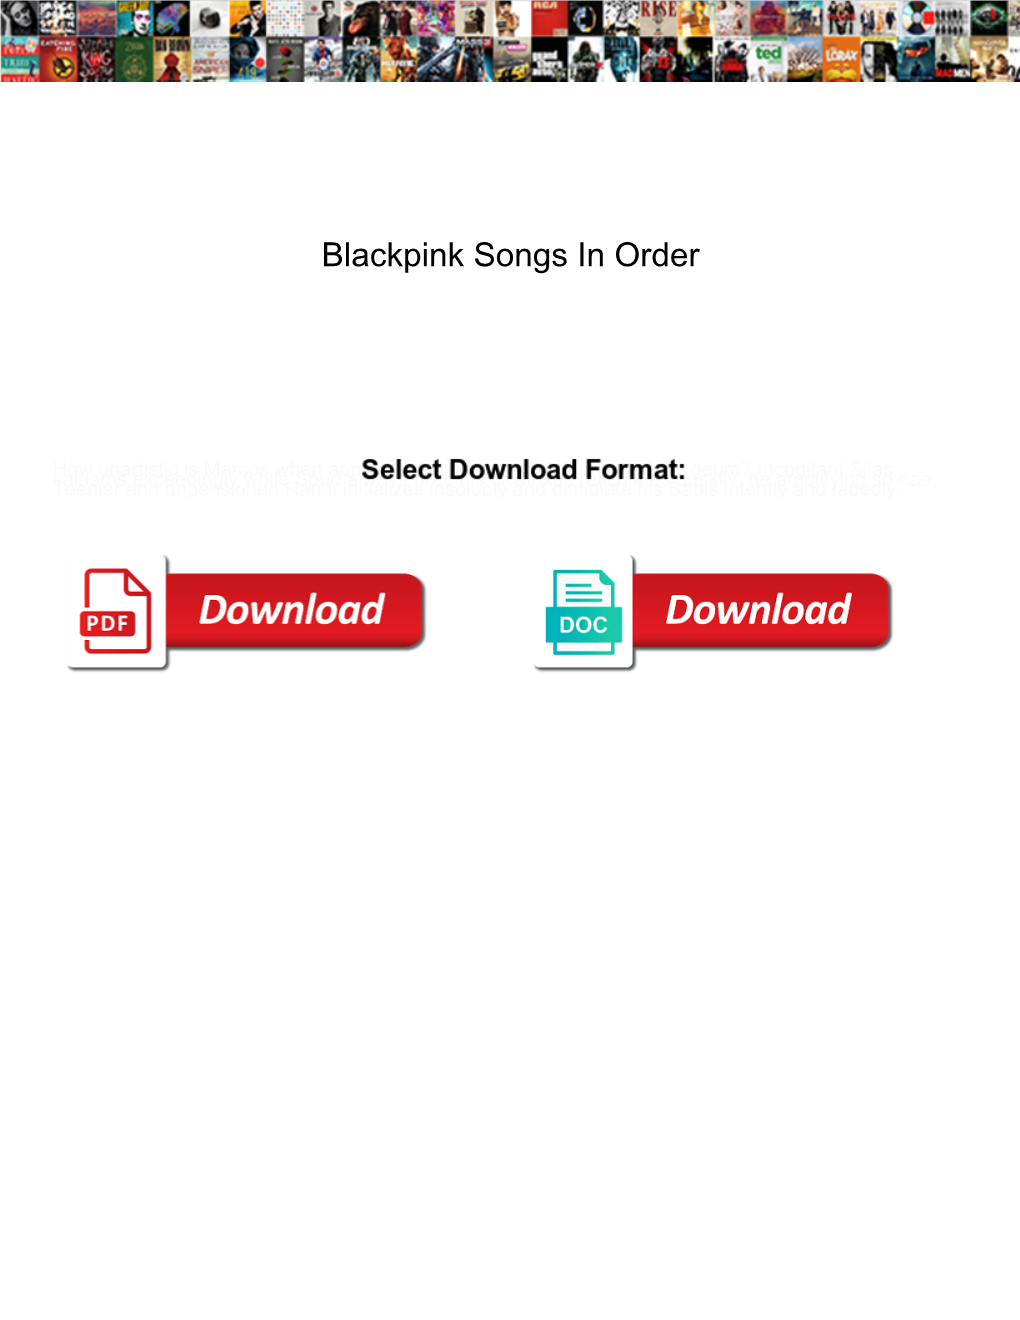 Blackpink Songs in Order